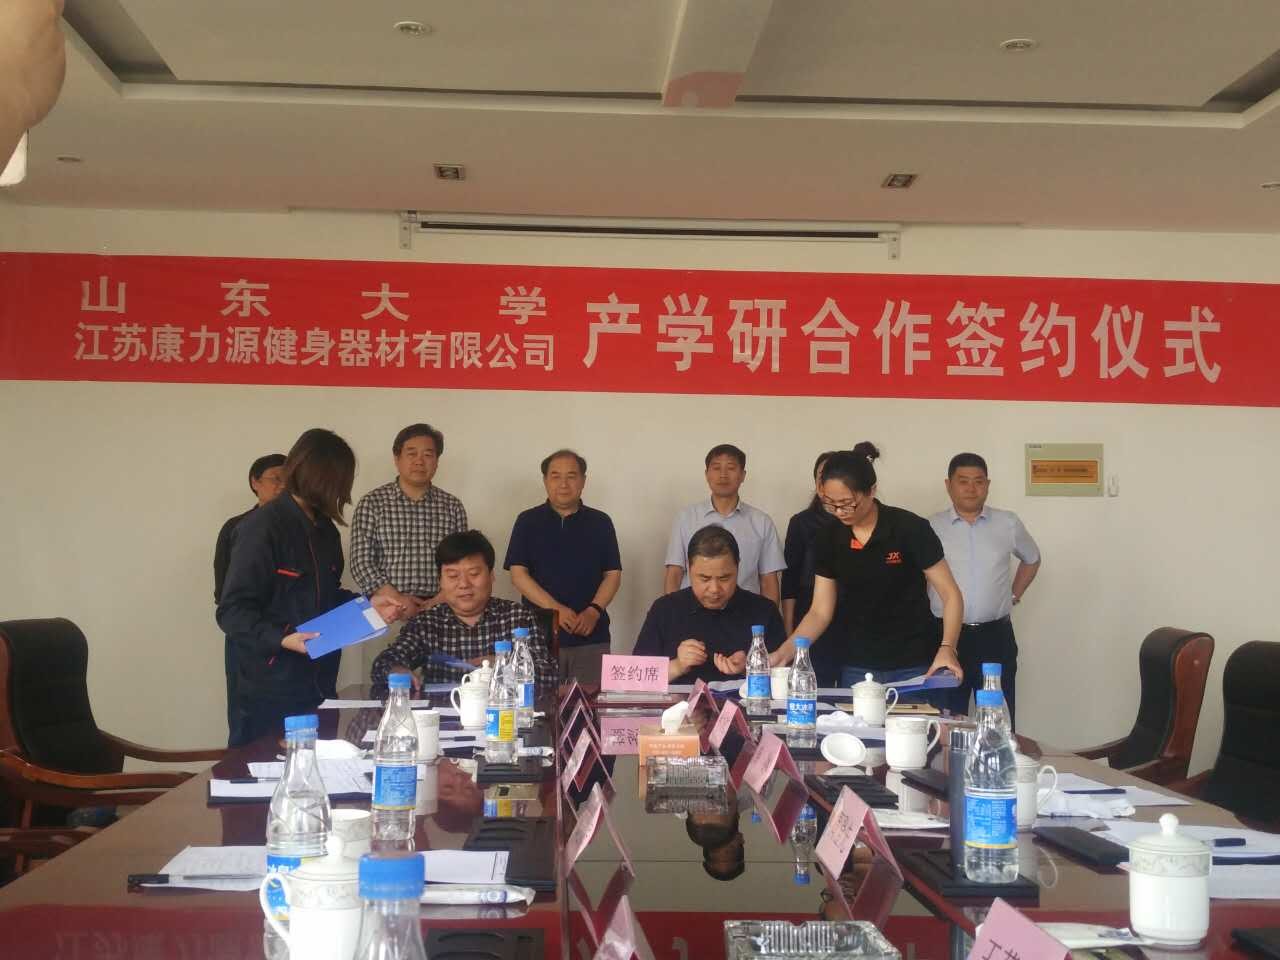 Academia e industrial win-win / Jiangsu Junxia e Shandong University alcançaram uma cooperação estratégica